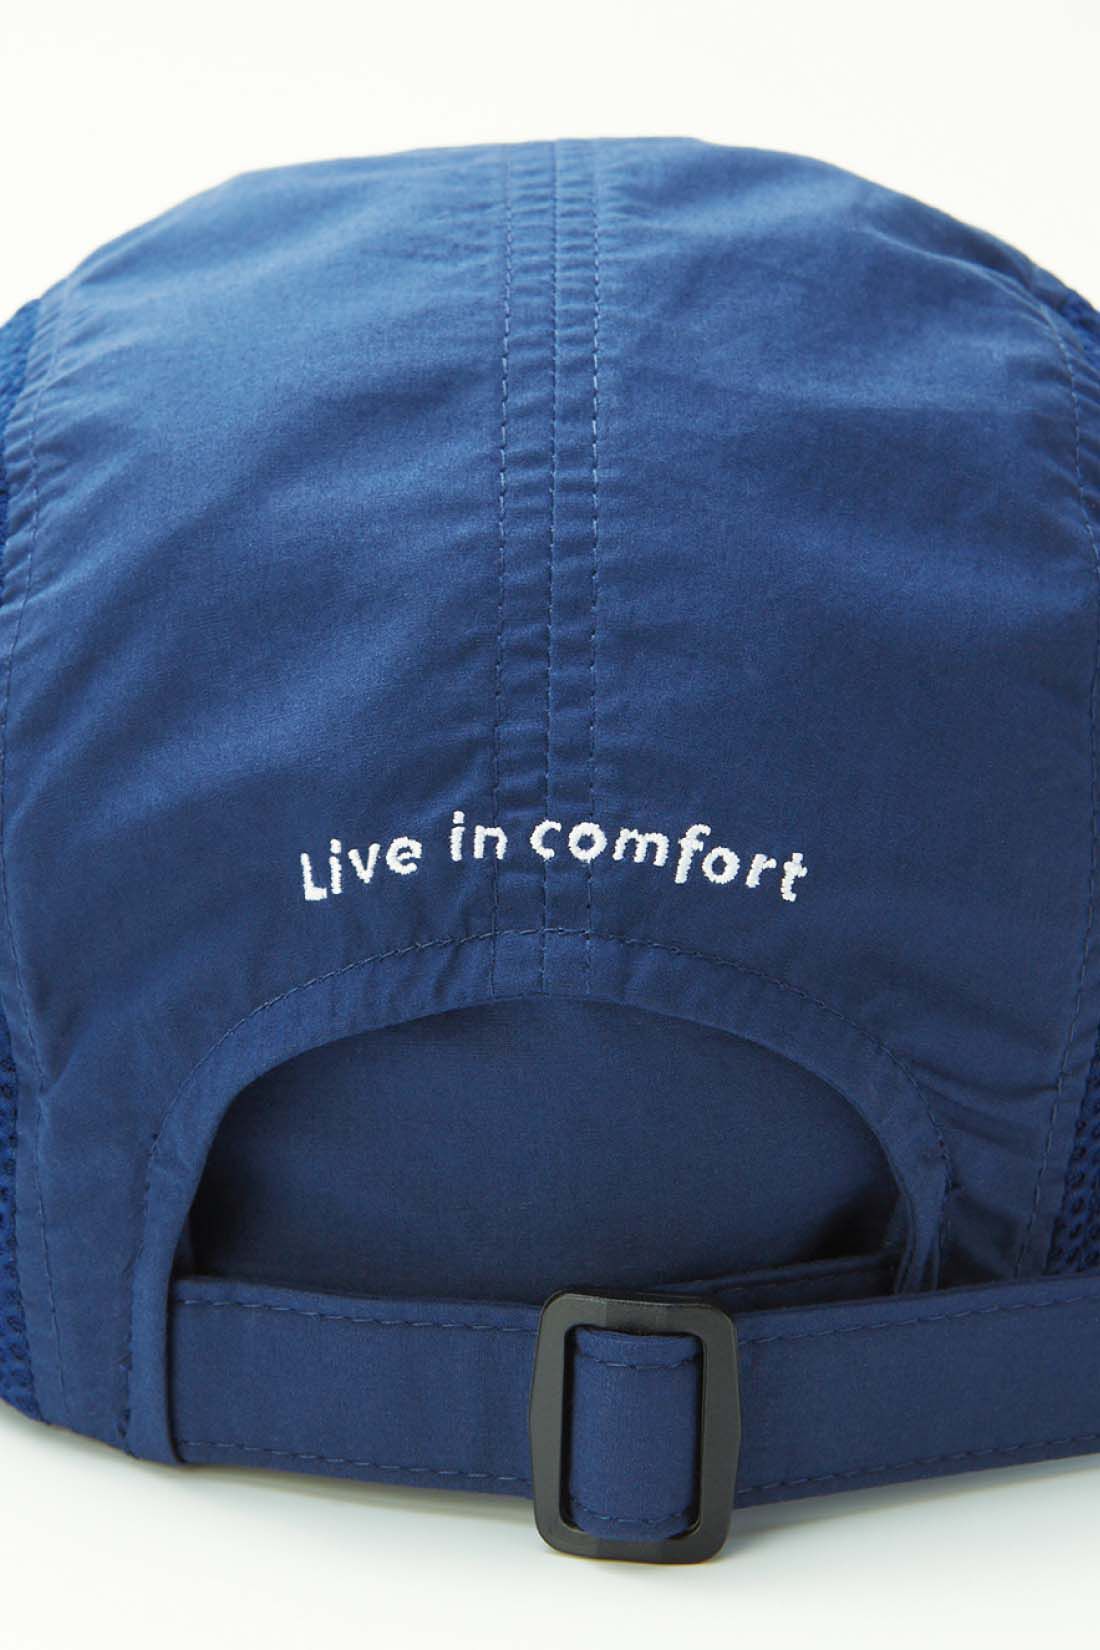 Live in  comfort|リブ イン コンフォート　丸洗いできる 涼やかUVカットメッシュキャップ〈ブラック〉|後ろのアジャスターでサイズ感を調節可能。